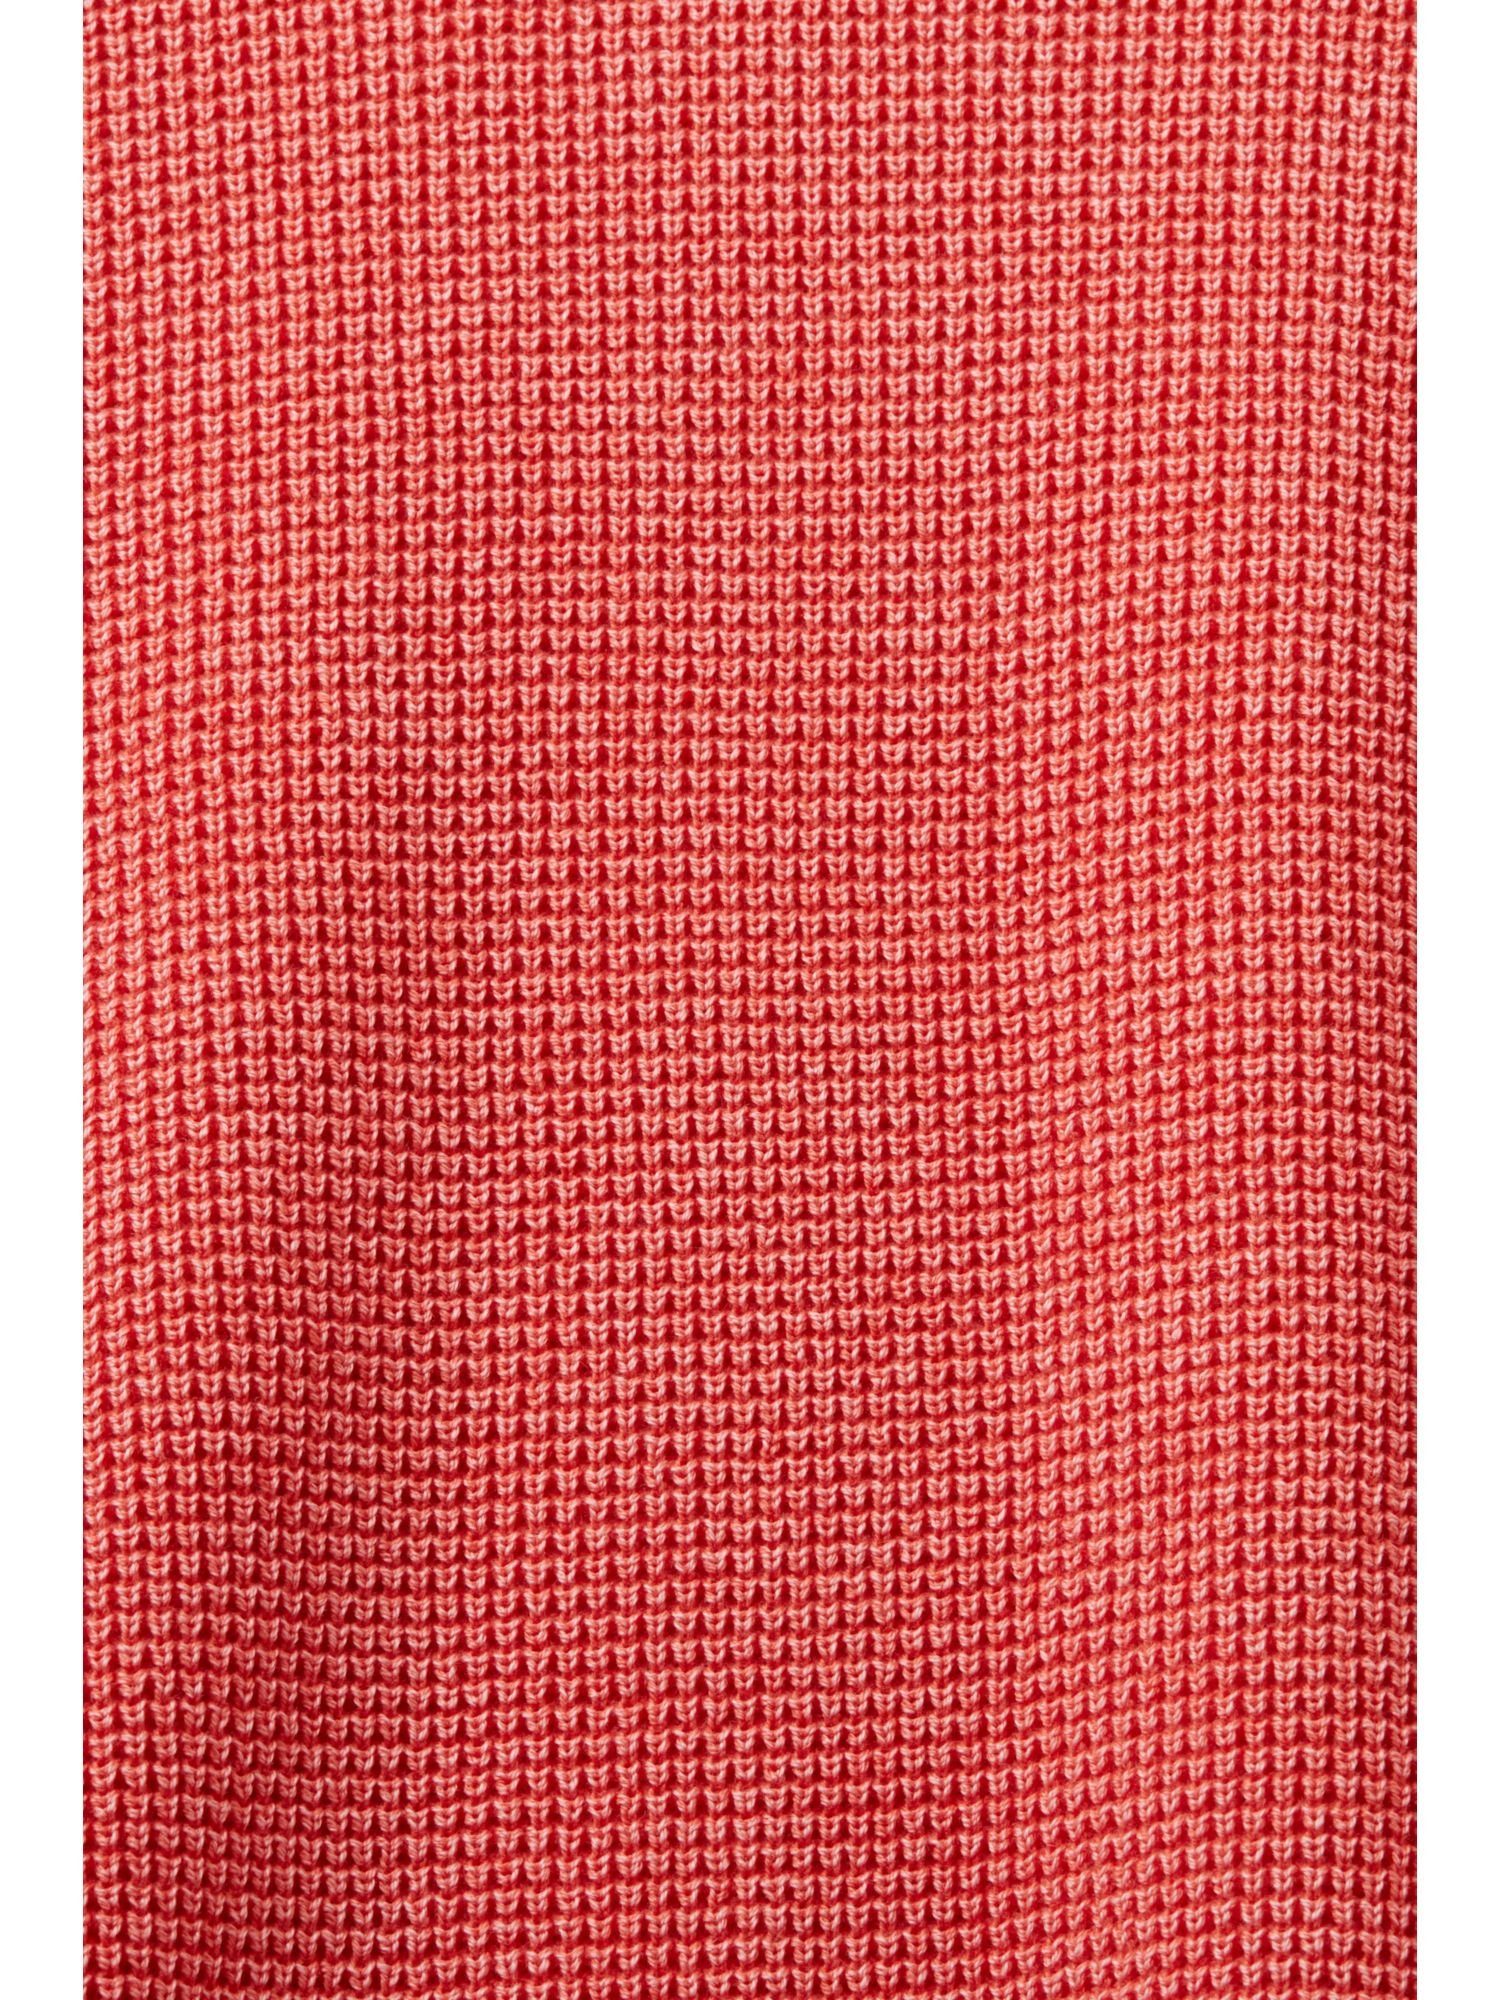 % Rundhalsausschnitt, Pullover 100 CORAL Rundhalspullover RED Baumwolle Esprit mit